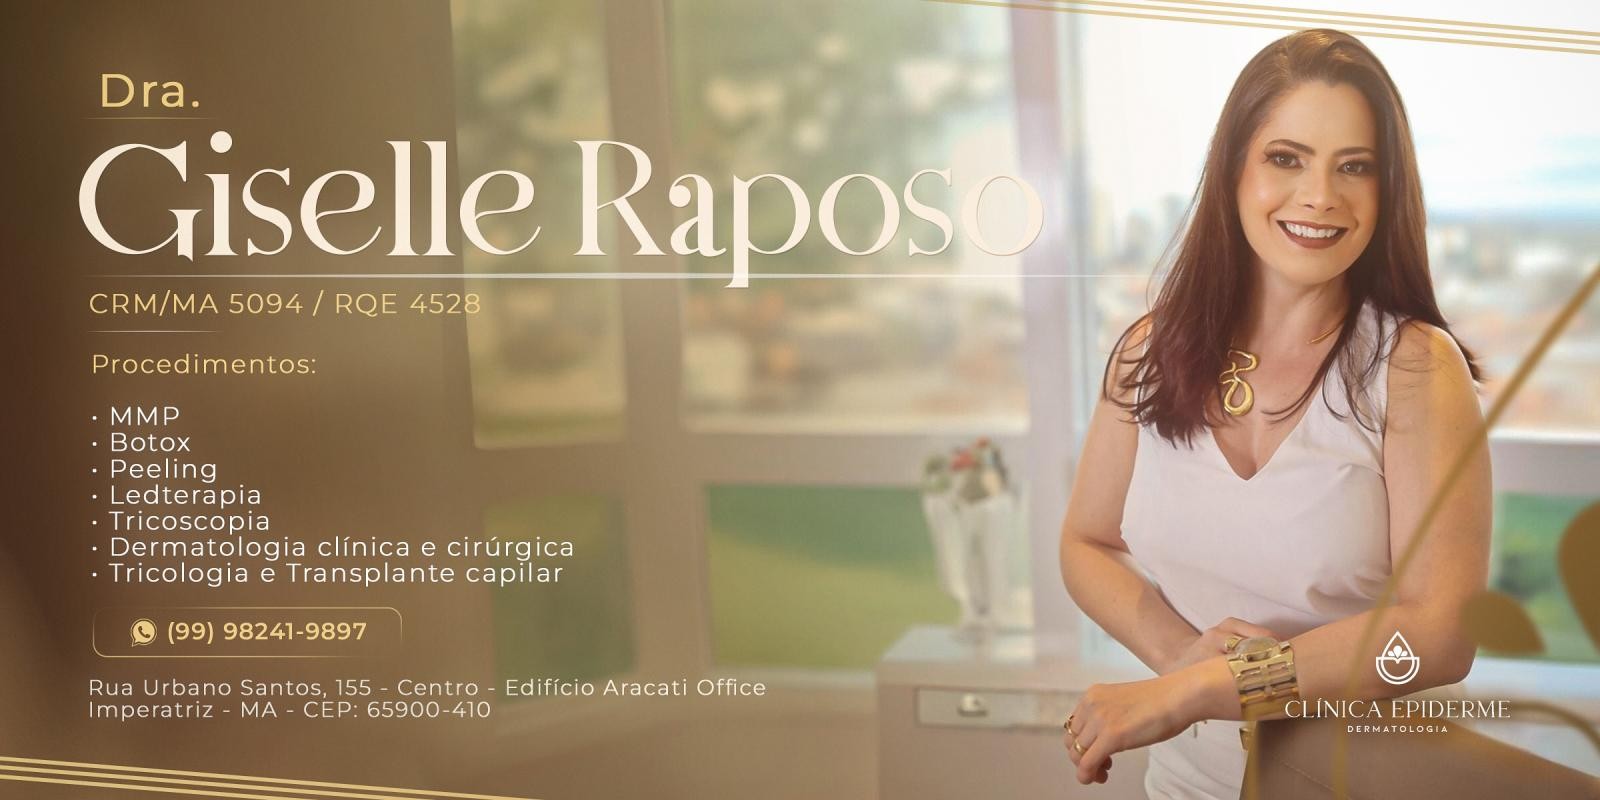 Giselle Raposo